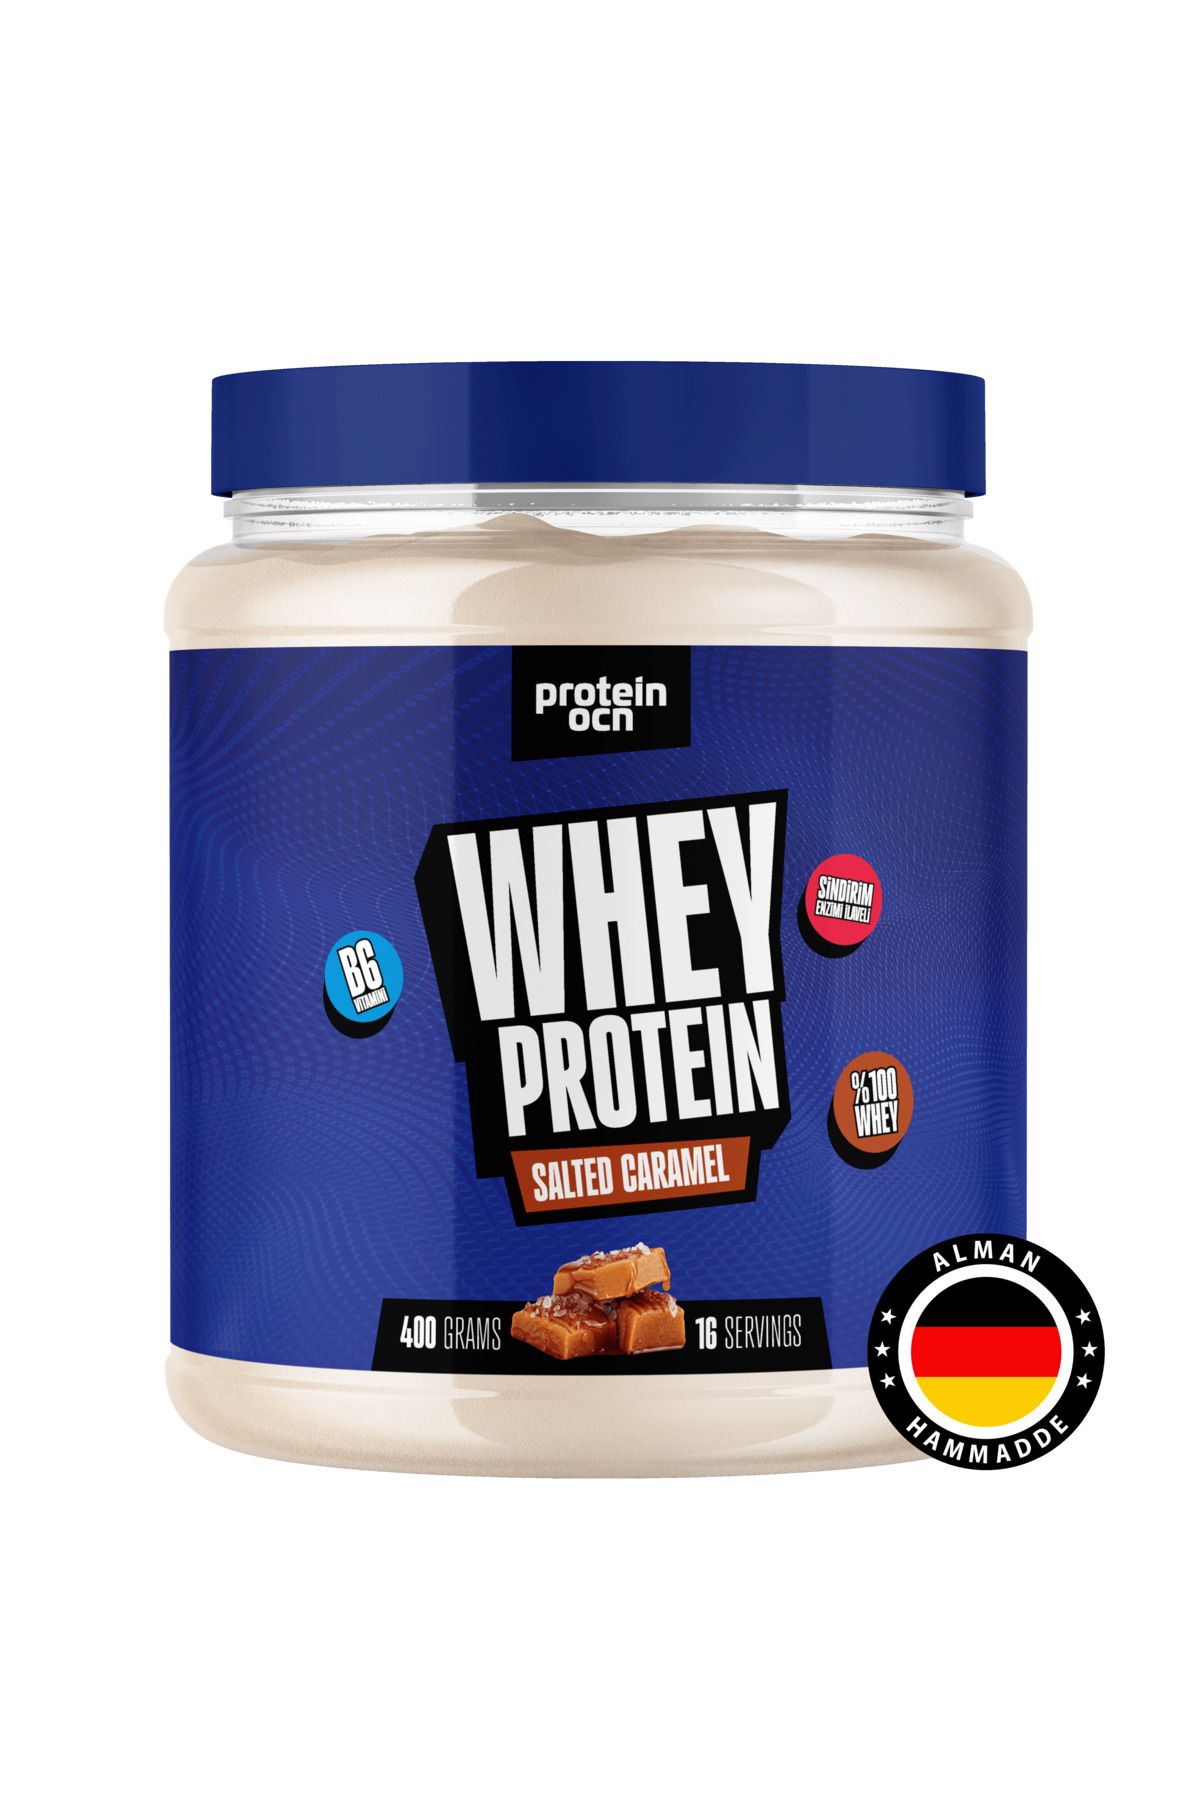 Proteinocean Whey Protein™ Salted Caramel 400g - 16 Servis